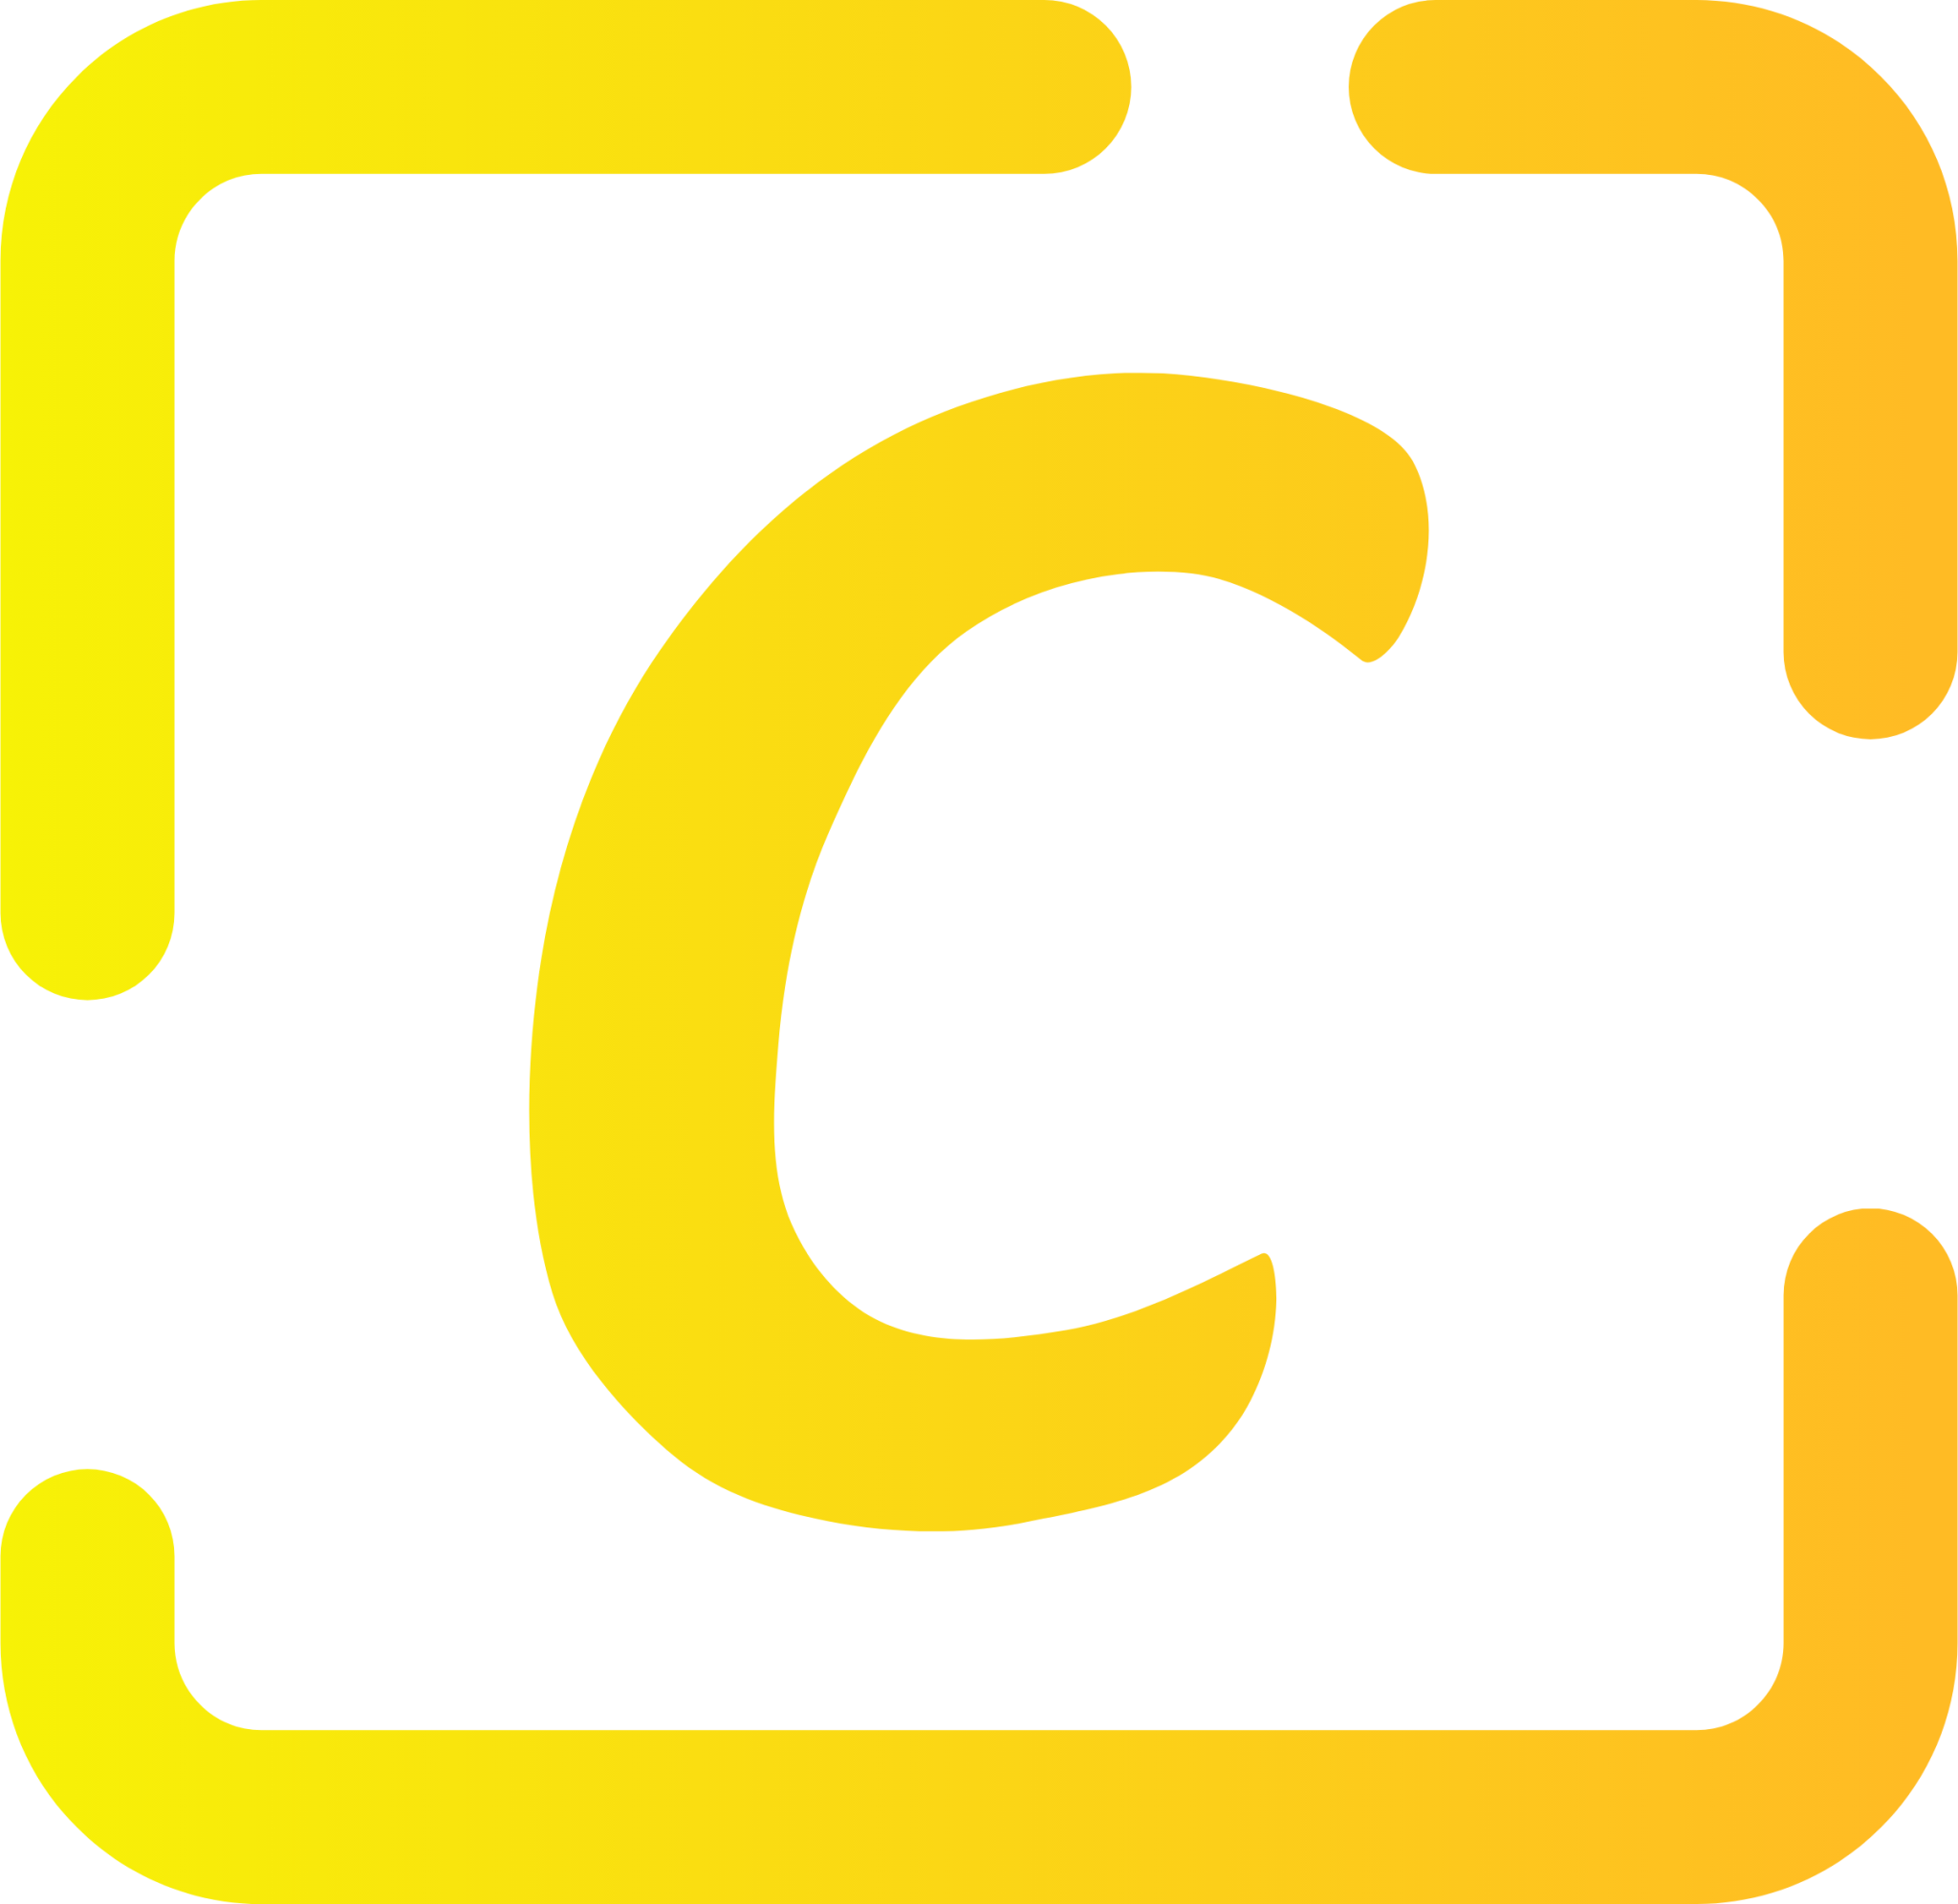 codelite icon